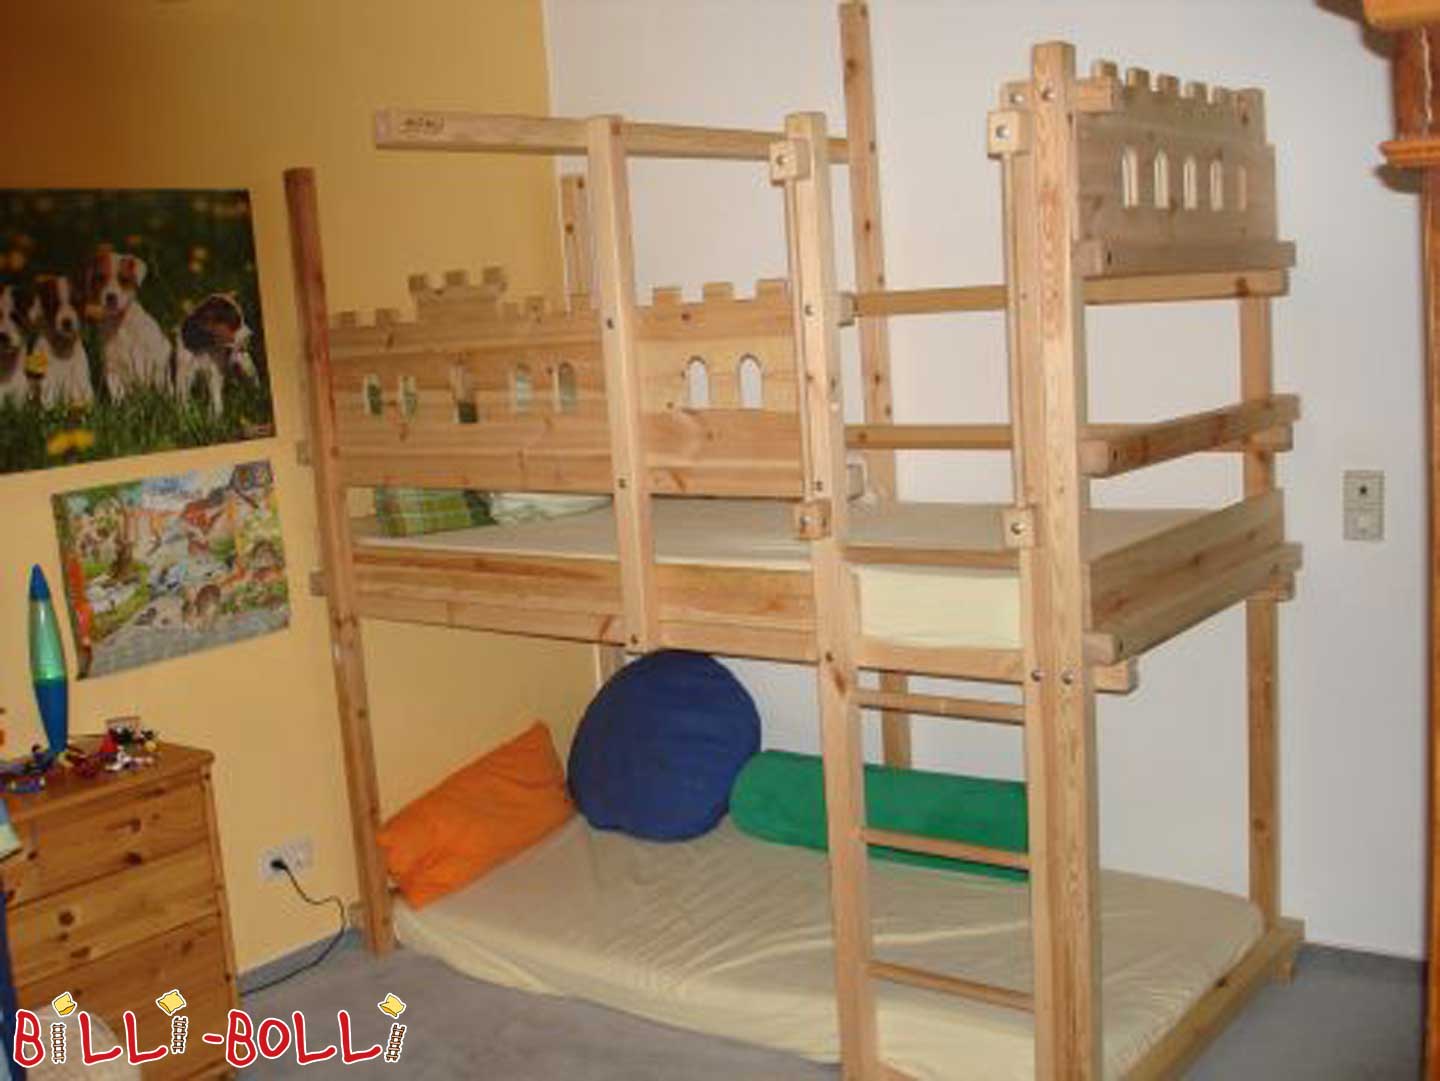 Bruņinieka bēniņu gulta Billi-Bolli, kas aug kopā ar bērnu (Kategorija: Izmantota bēniņu gulta)